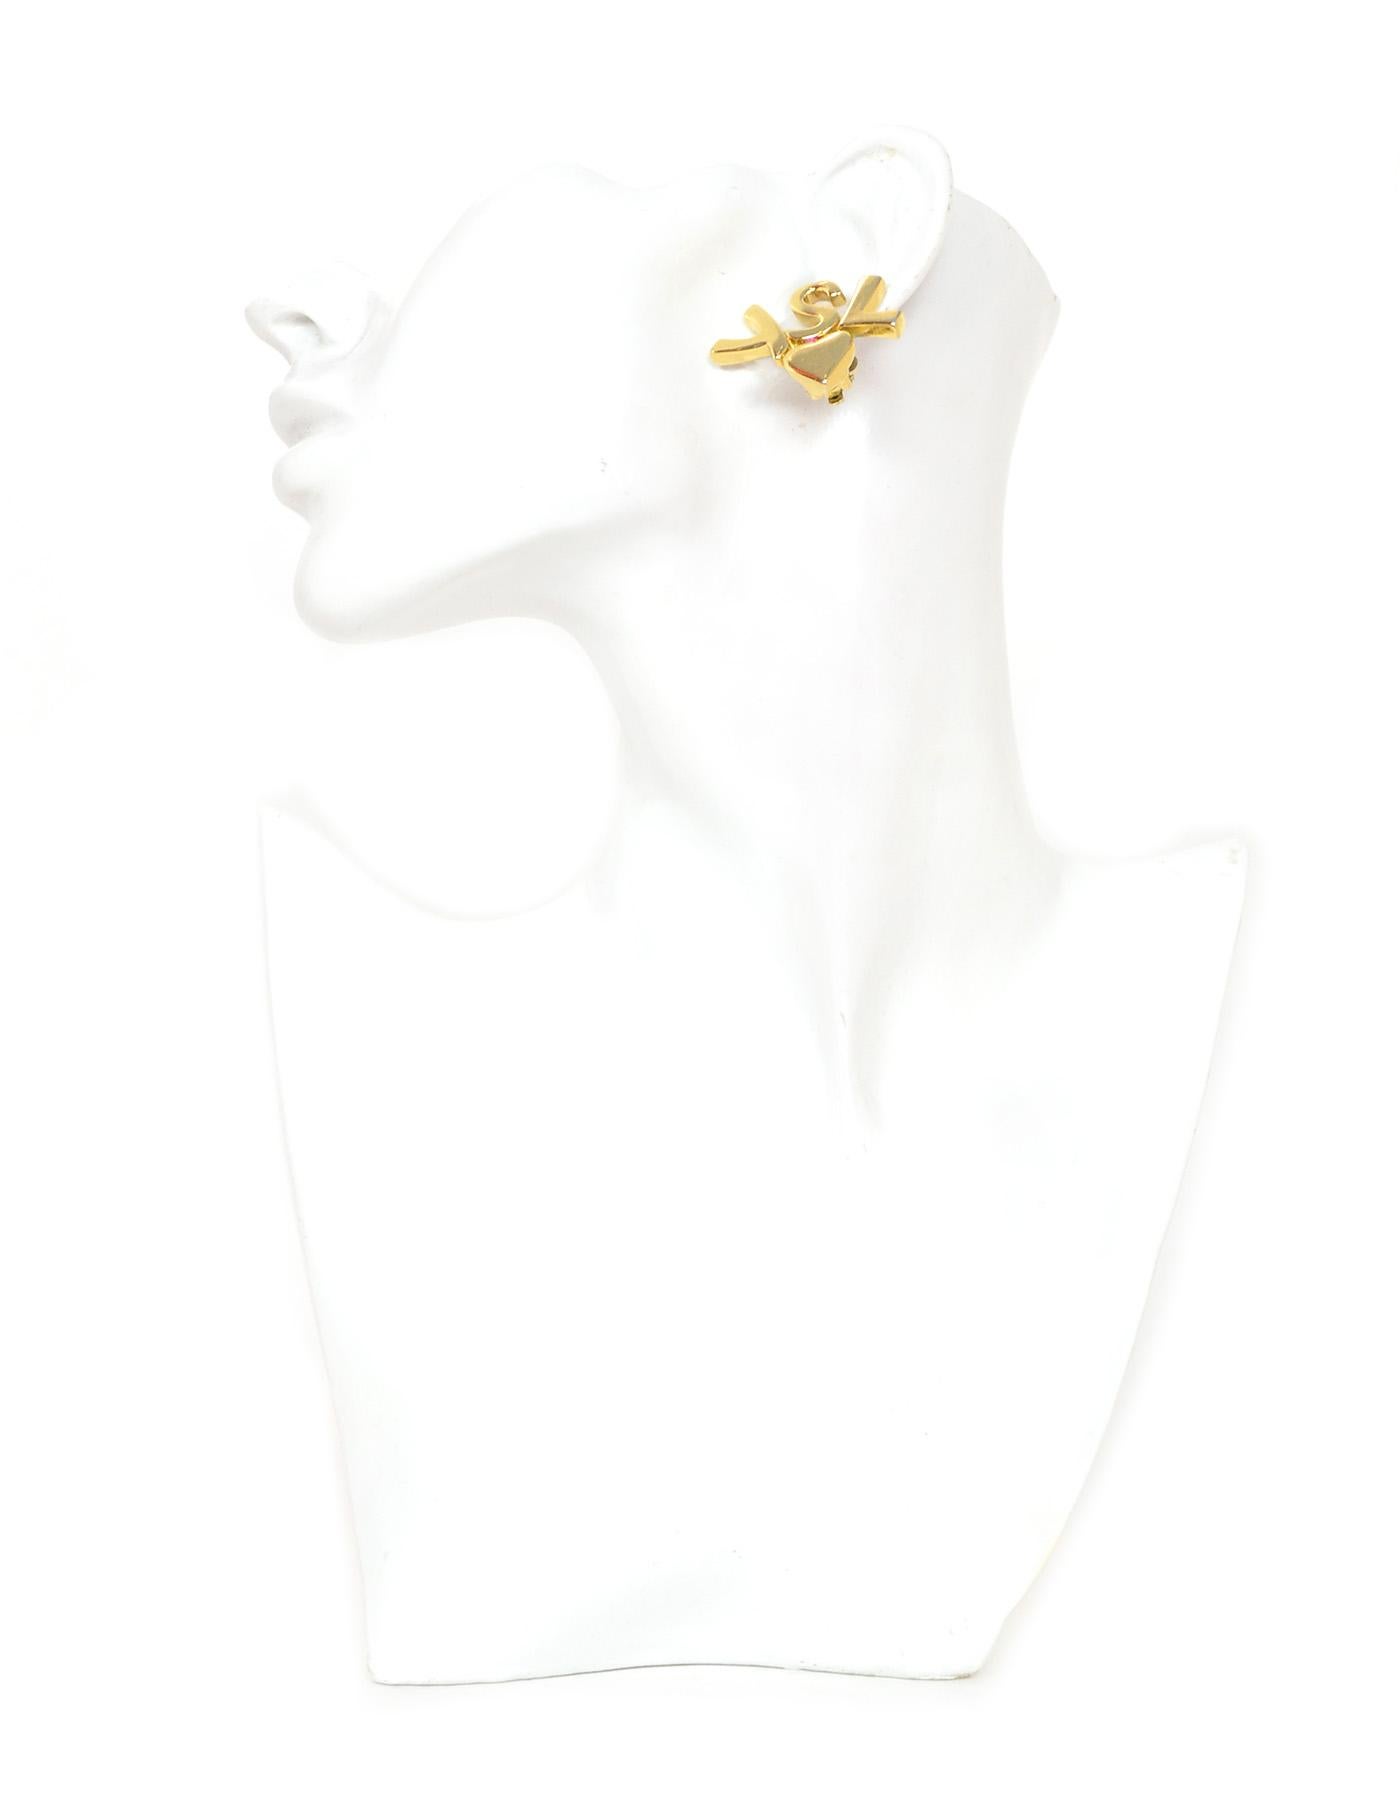 Yves Saint Laurent YSL Vintage Goldtone Heart Logo Clip On Earrings

Made In:  France
Color: Goldtone
Materials:  Goldtone metal
Hallmarks:   